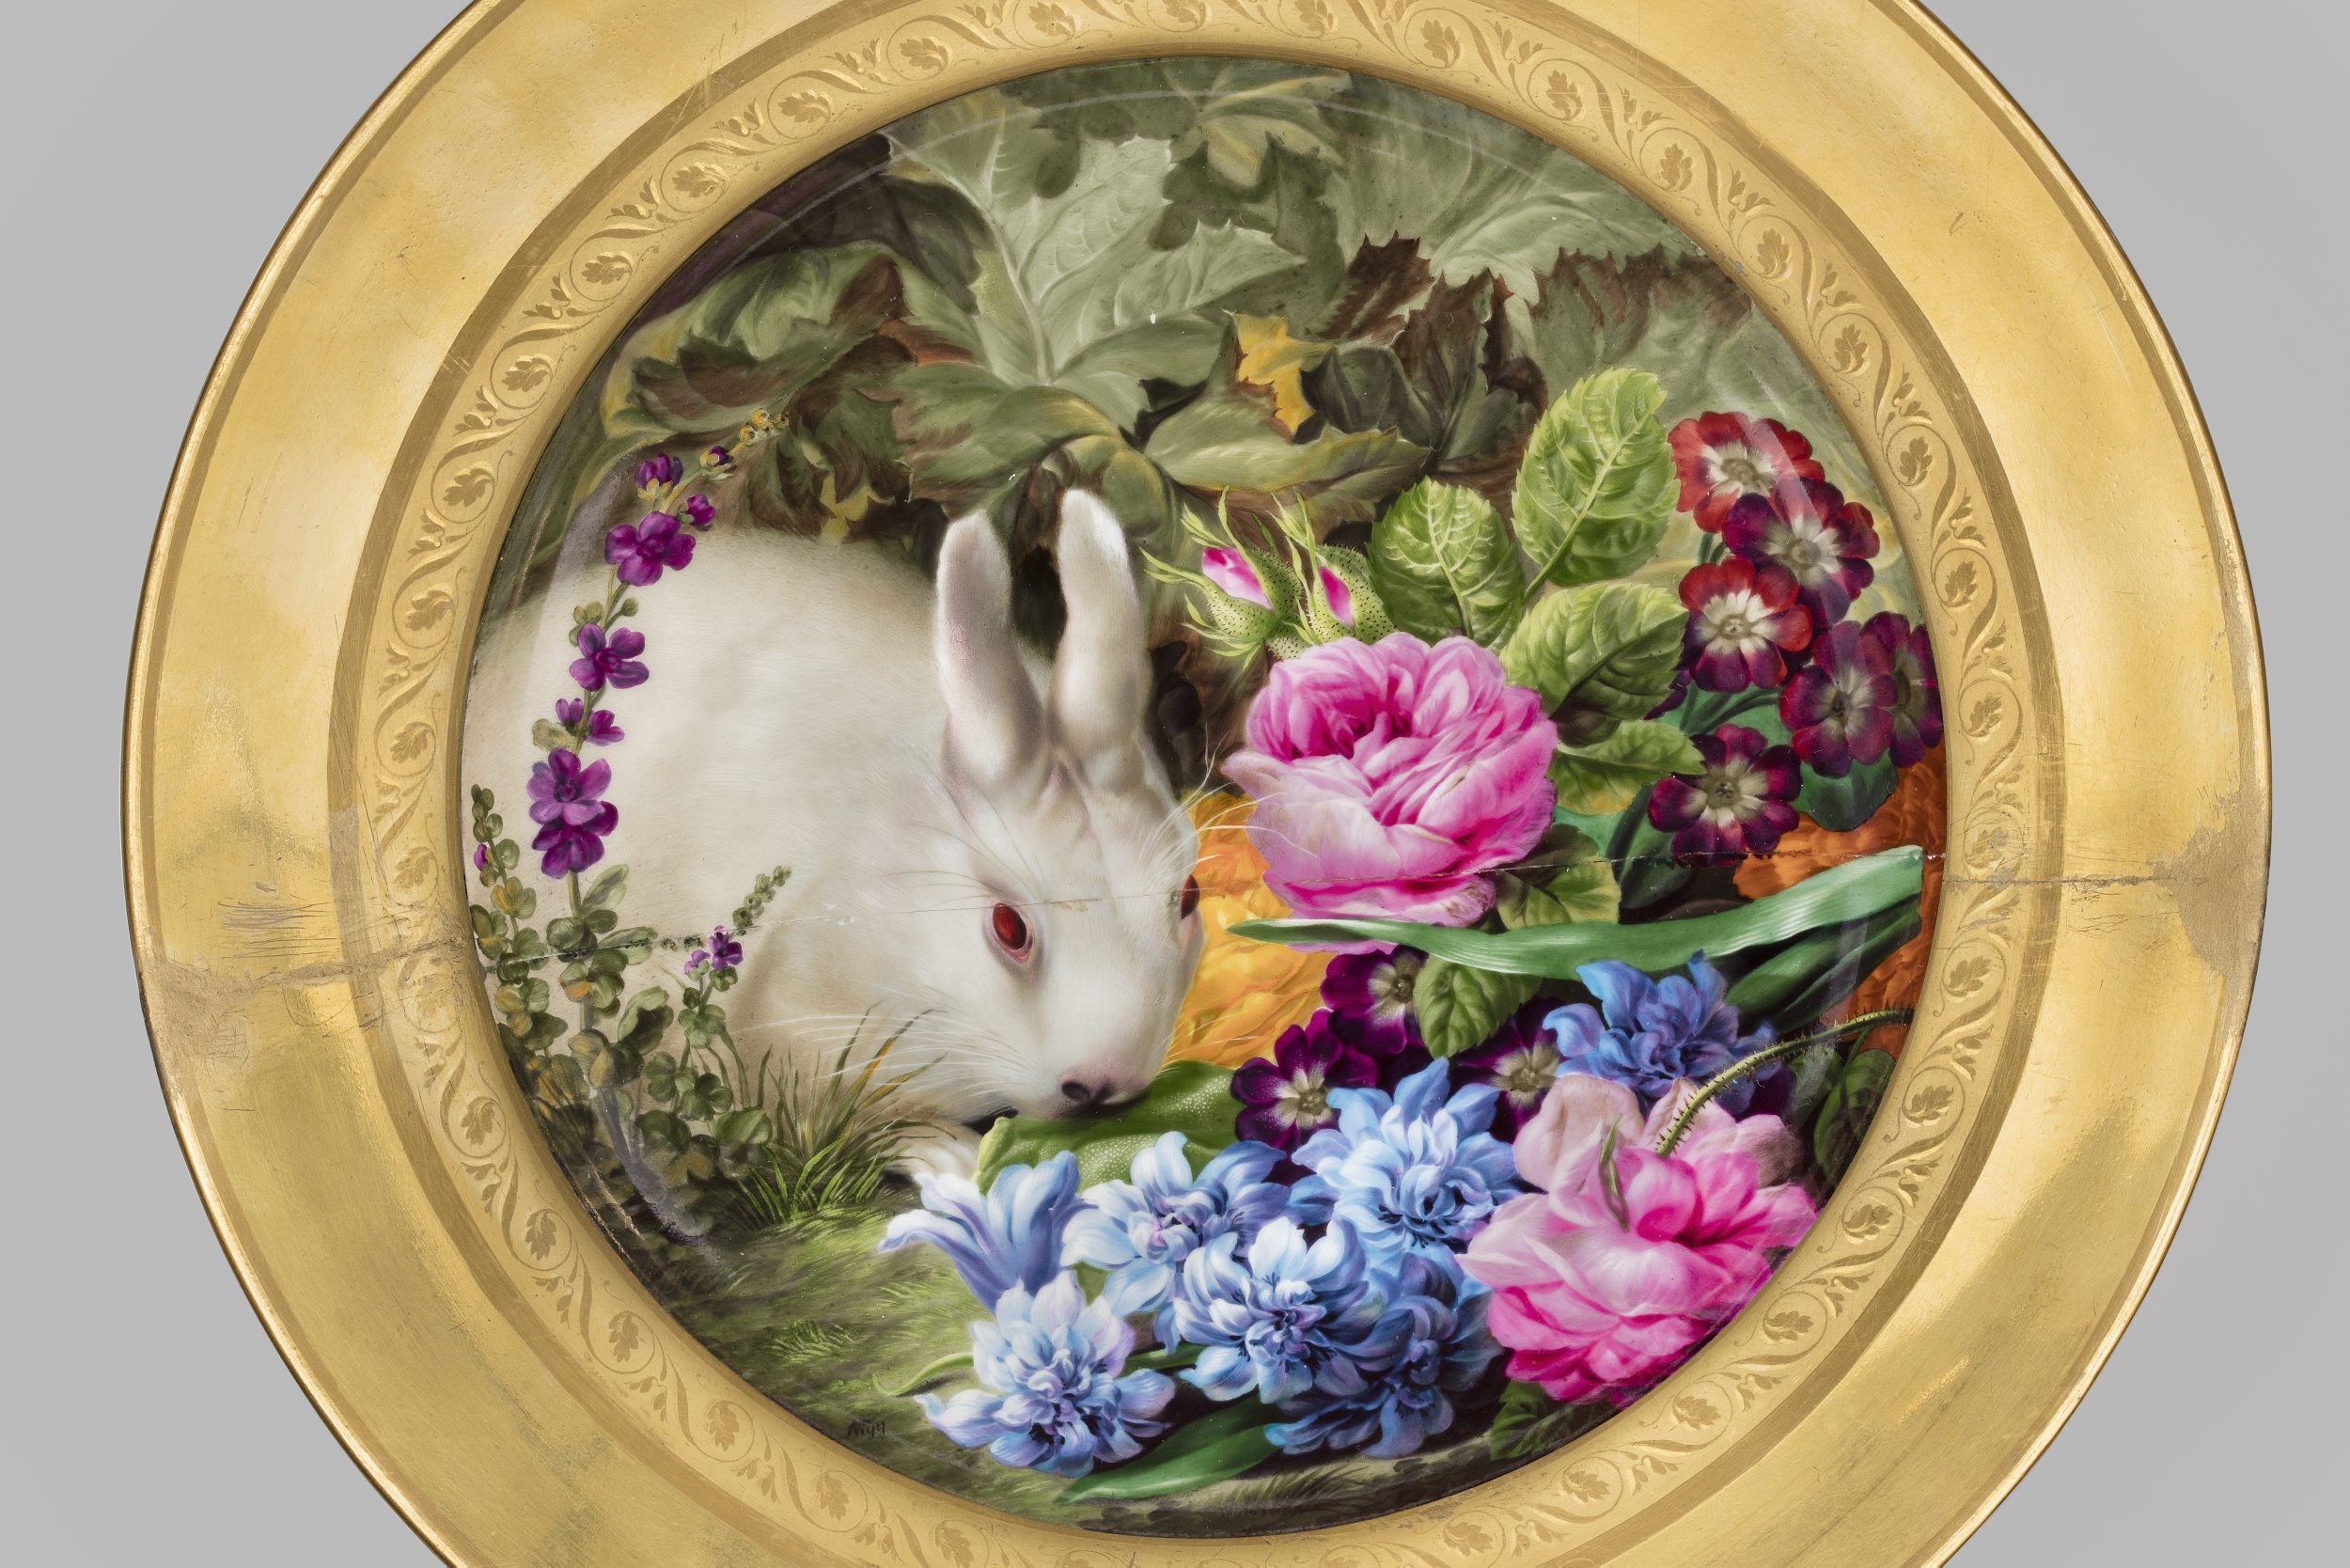 Talerz z królikiem wśród kwiatów, Wiedeń, Cesarska Manufaktura Porcelany, miniatura Josef Nigg, 1815, MNW, fot. Piotr Ligier (źródło: materiały prasowe MNW)